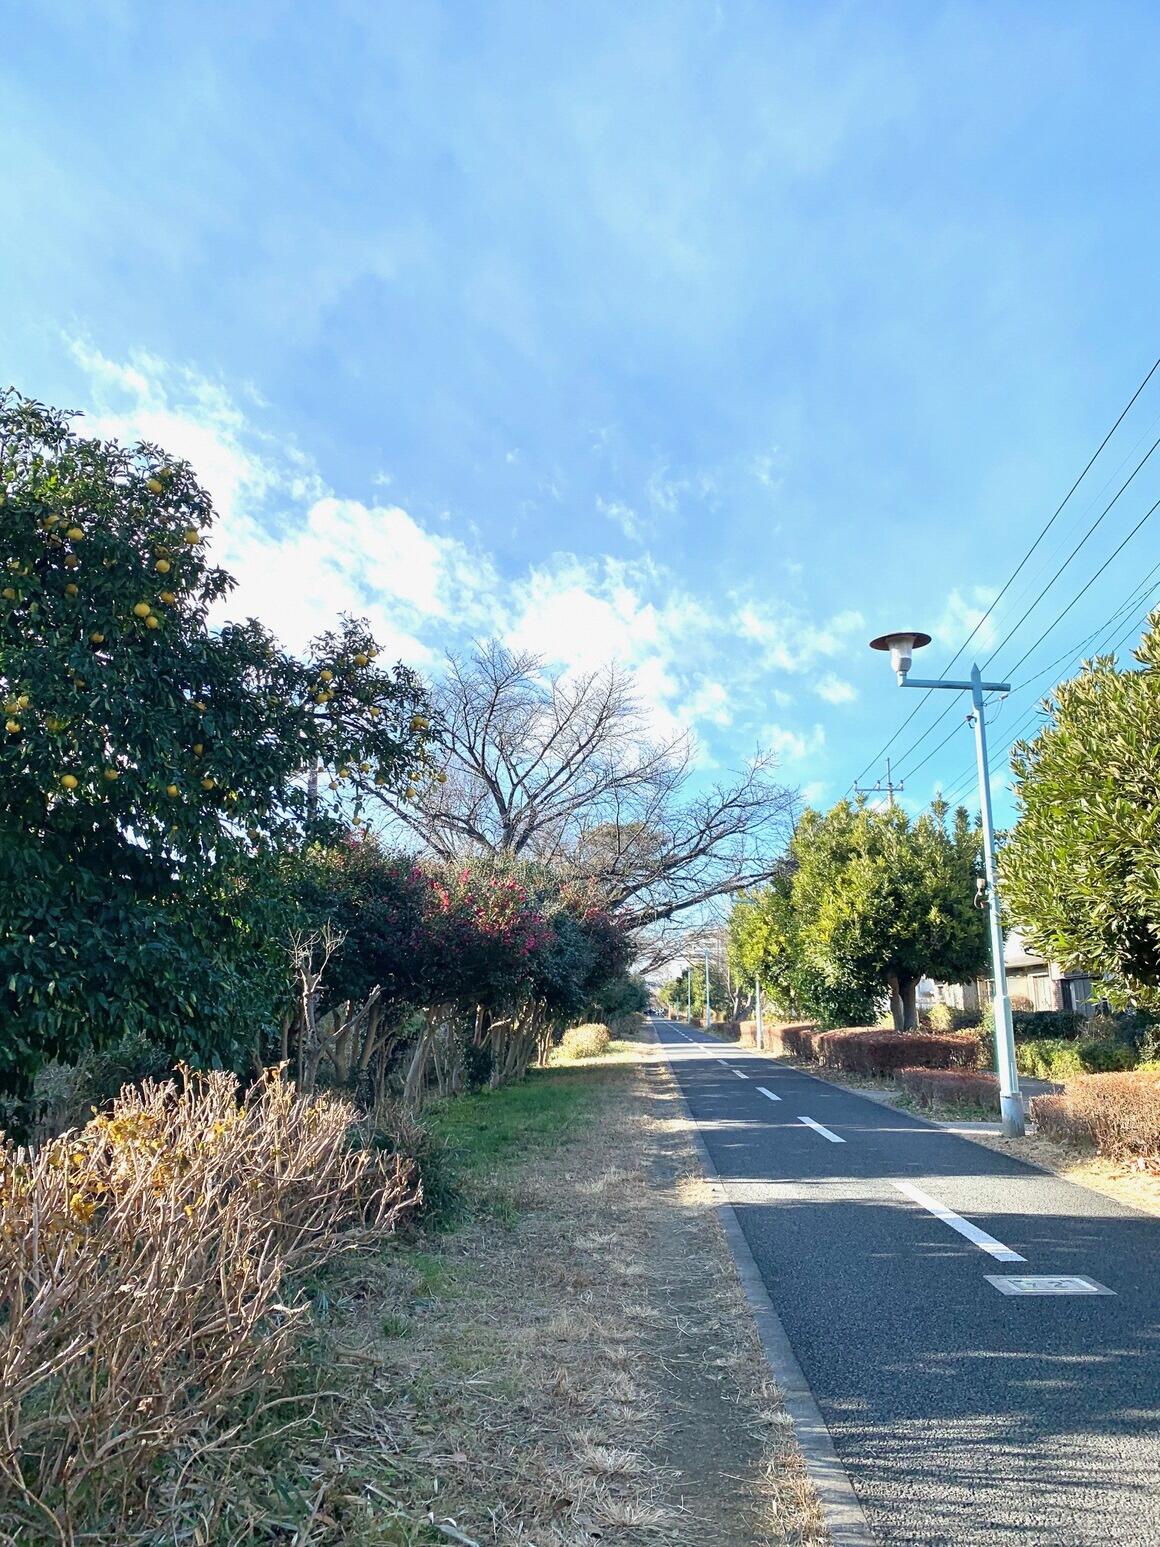 冬の晴れた日の萩山付近の多摩湖自転車歩行者道の写真。一直線に伸びる道と沿道の緑と葉の落ちた木々